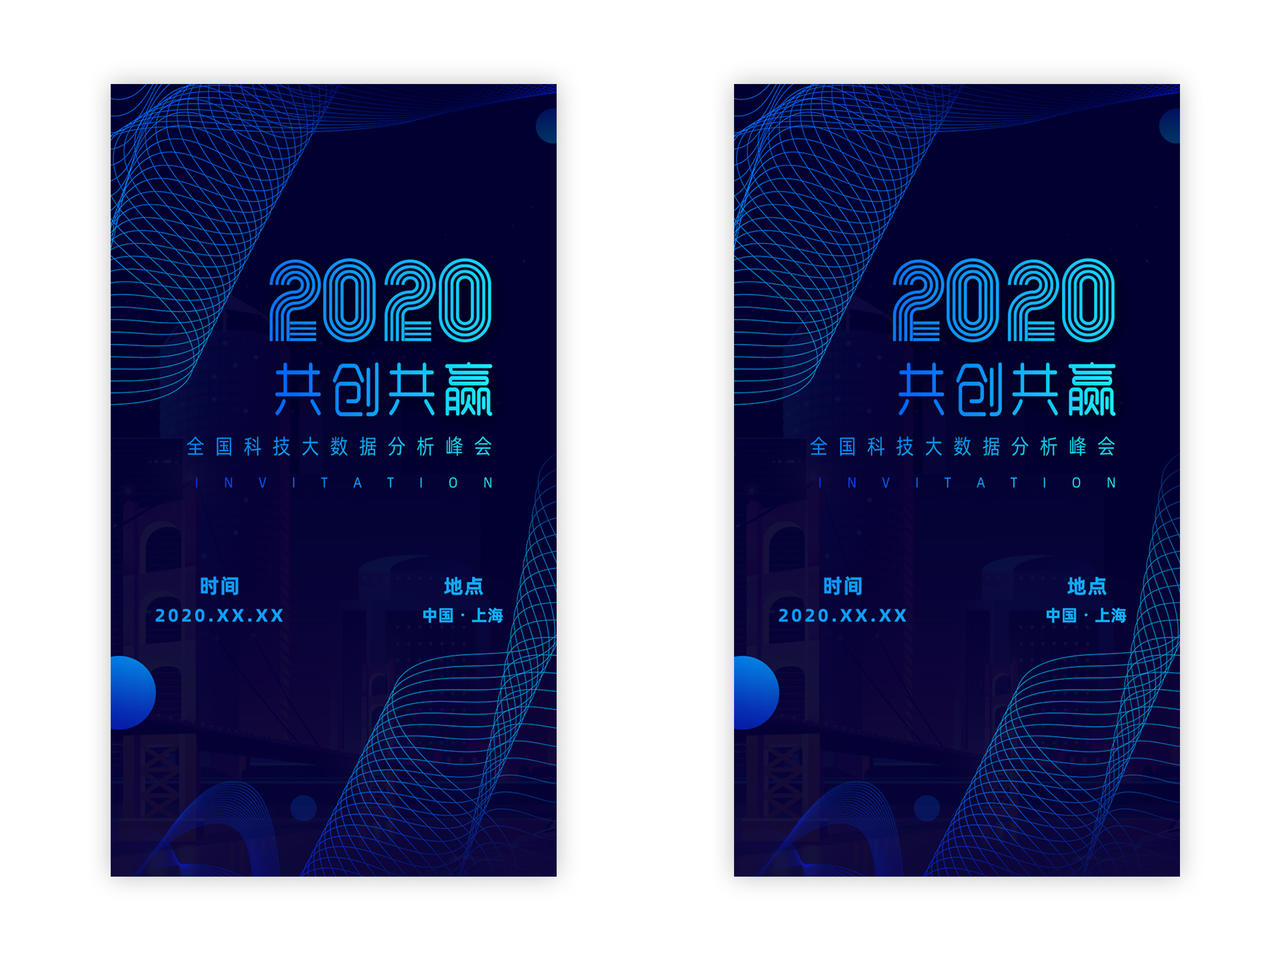 邀请函h5蓝色共创共赢2020年UI设计电子邀请函ui手机h5海报2020邀请函ui手机h5海报